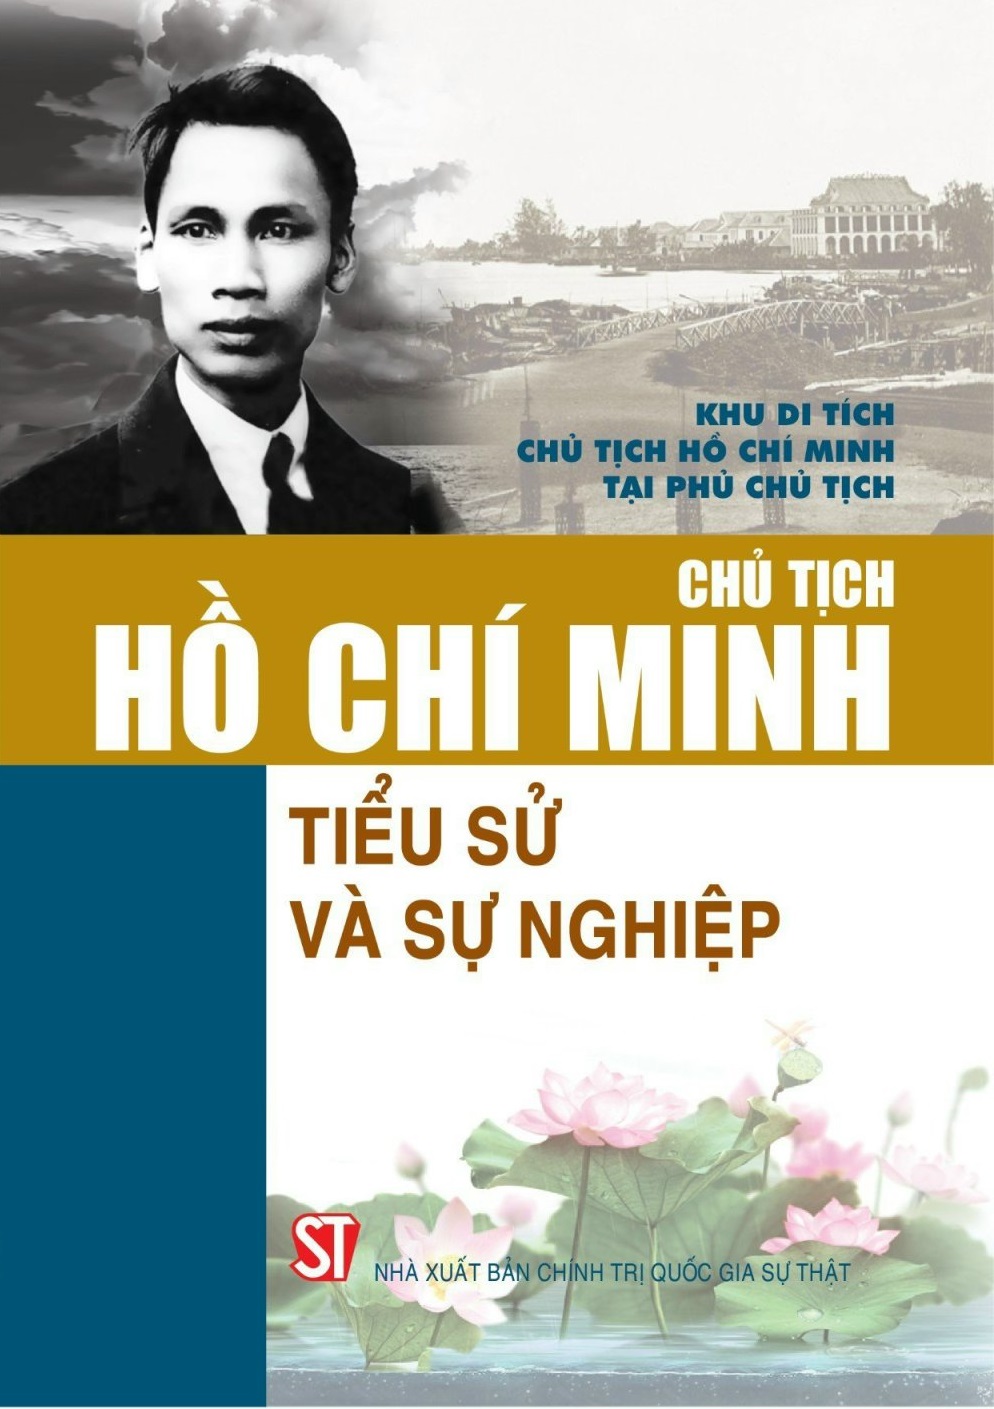 Chủ tịch Hồ Chí Minh - Tiểu sử và sự nghiệp